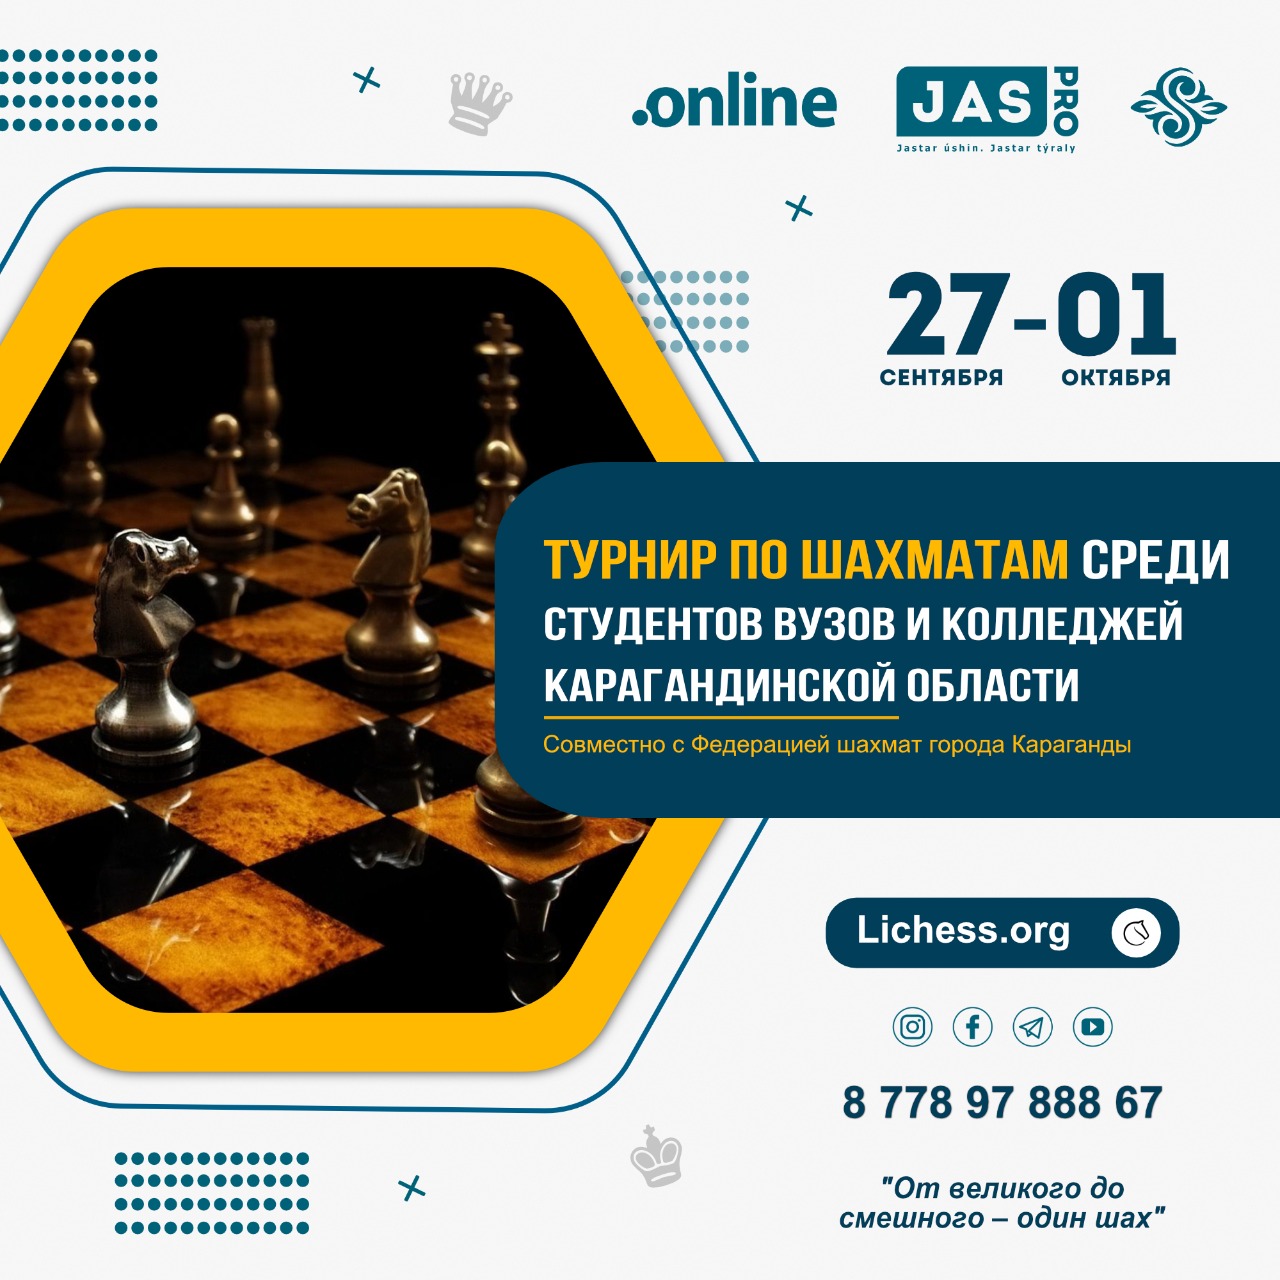 Студентов Карагандинской области приглашают принять участие в шахматном турнире